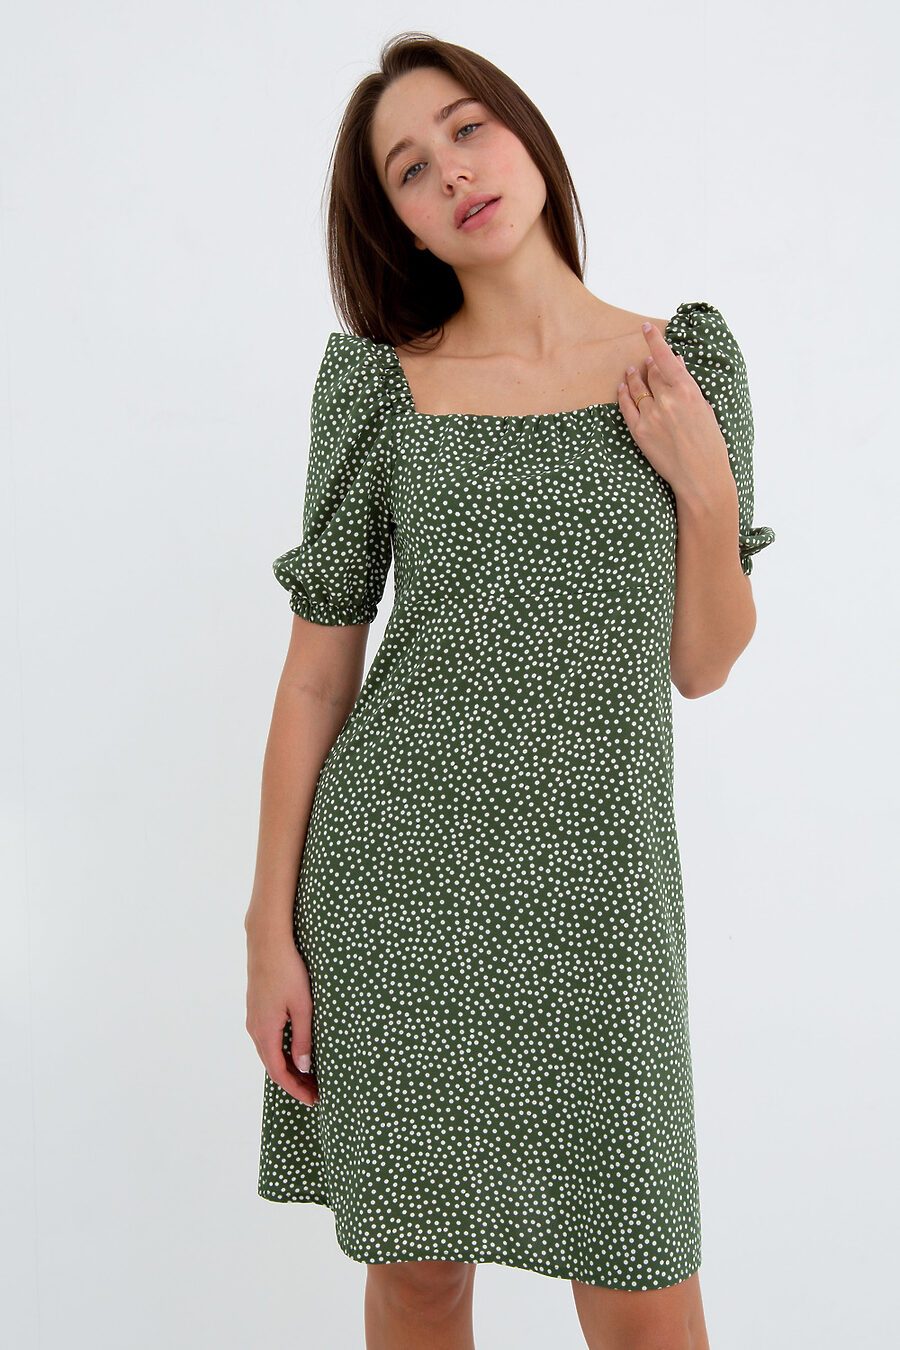 Платье П-5 для женщин НАТАЛИ 775466 купить оптом от производителя. Совместная покупка женской одежды в OptMoyo